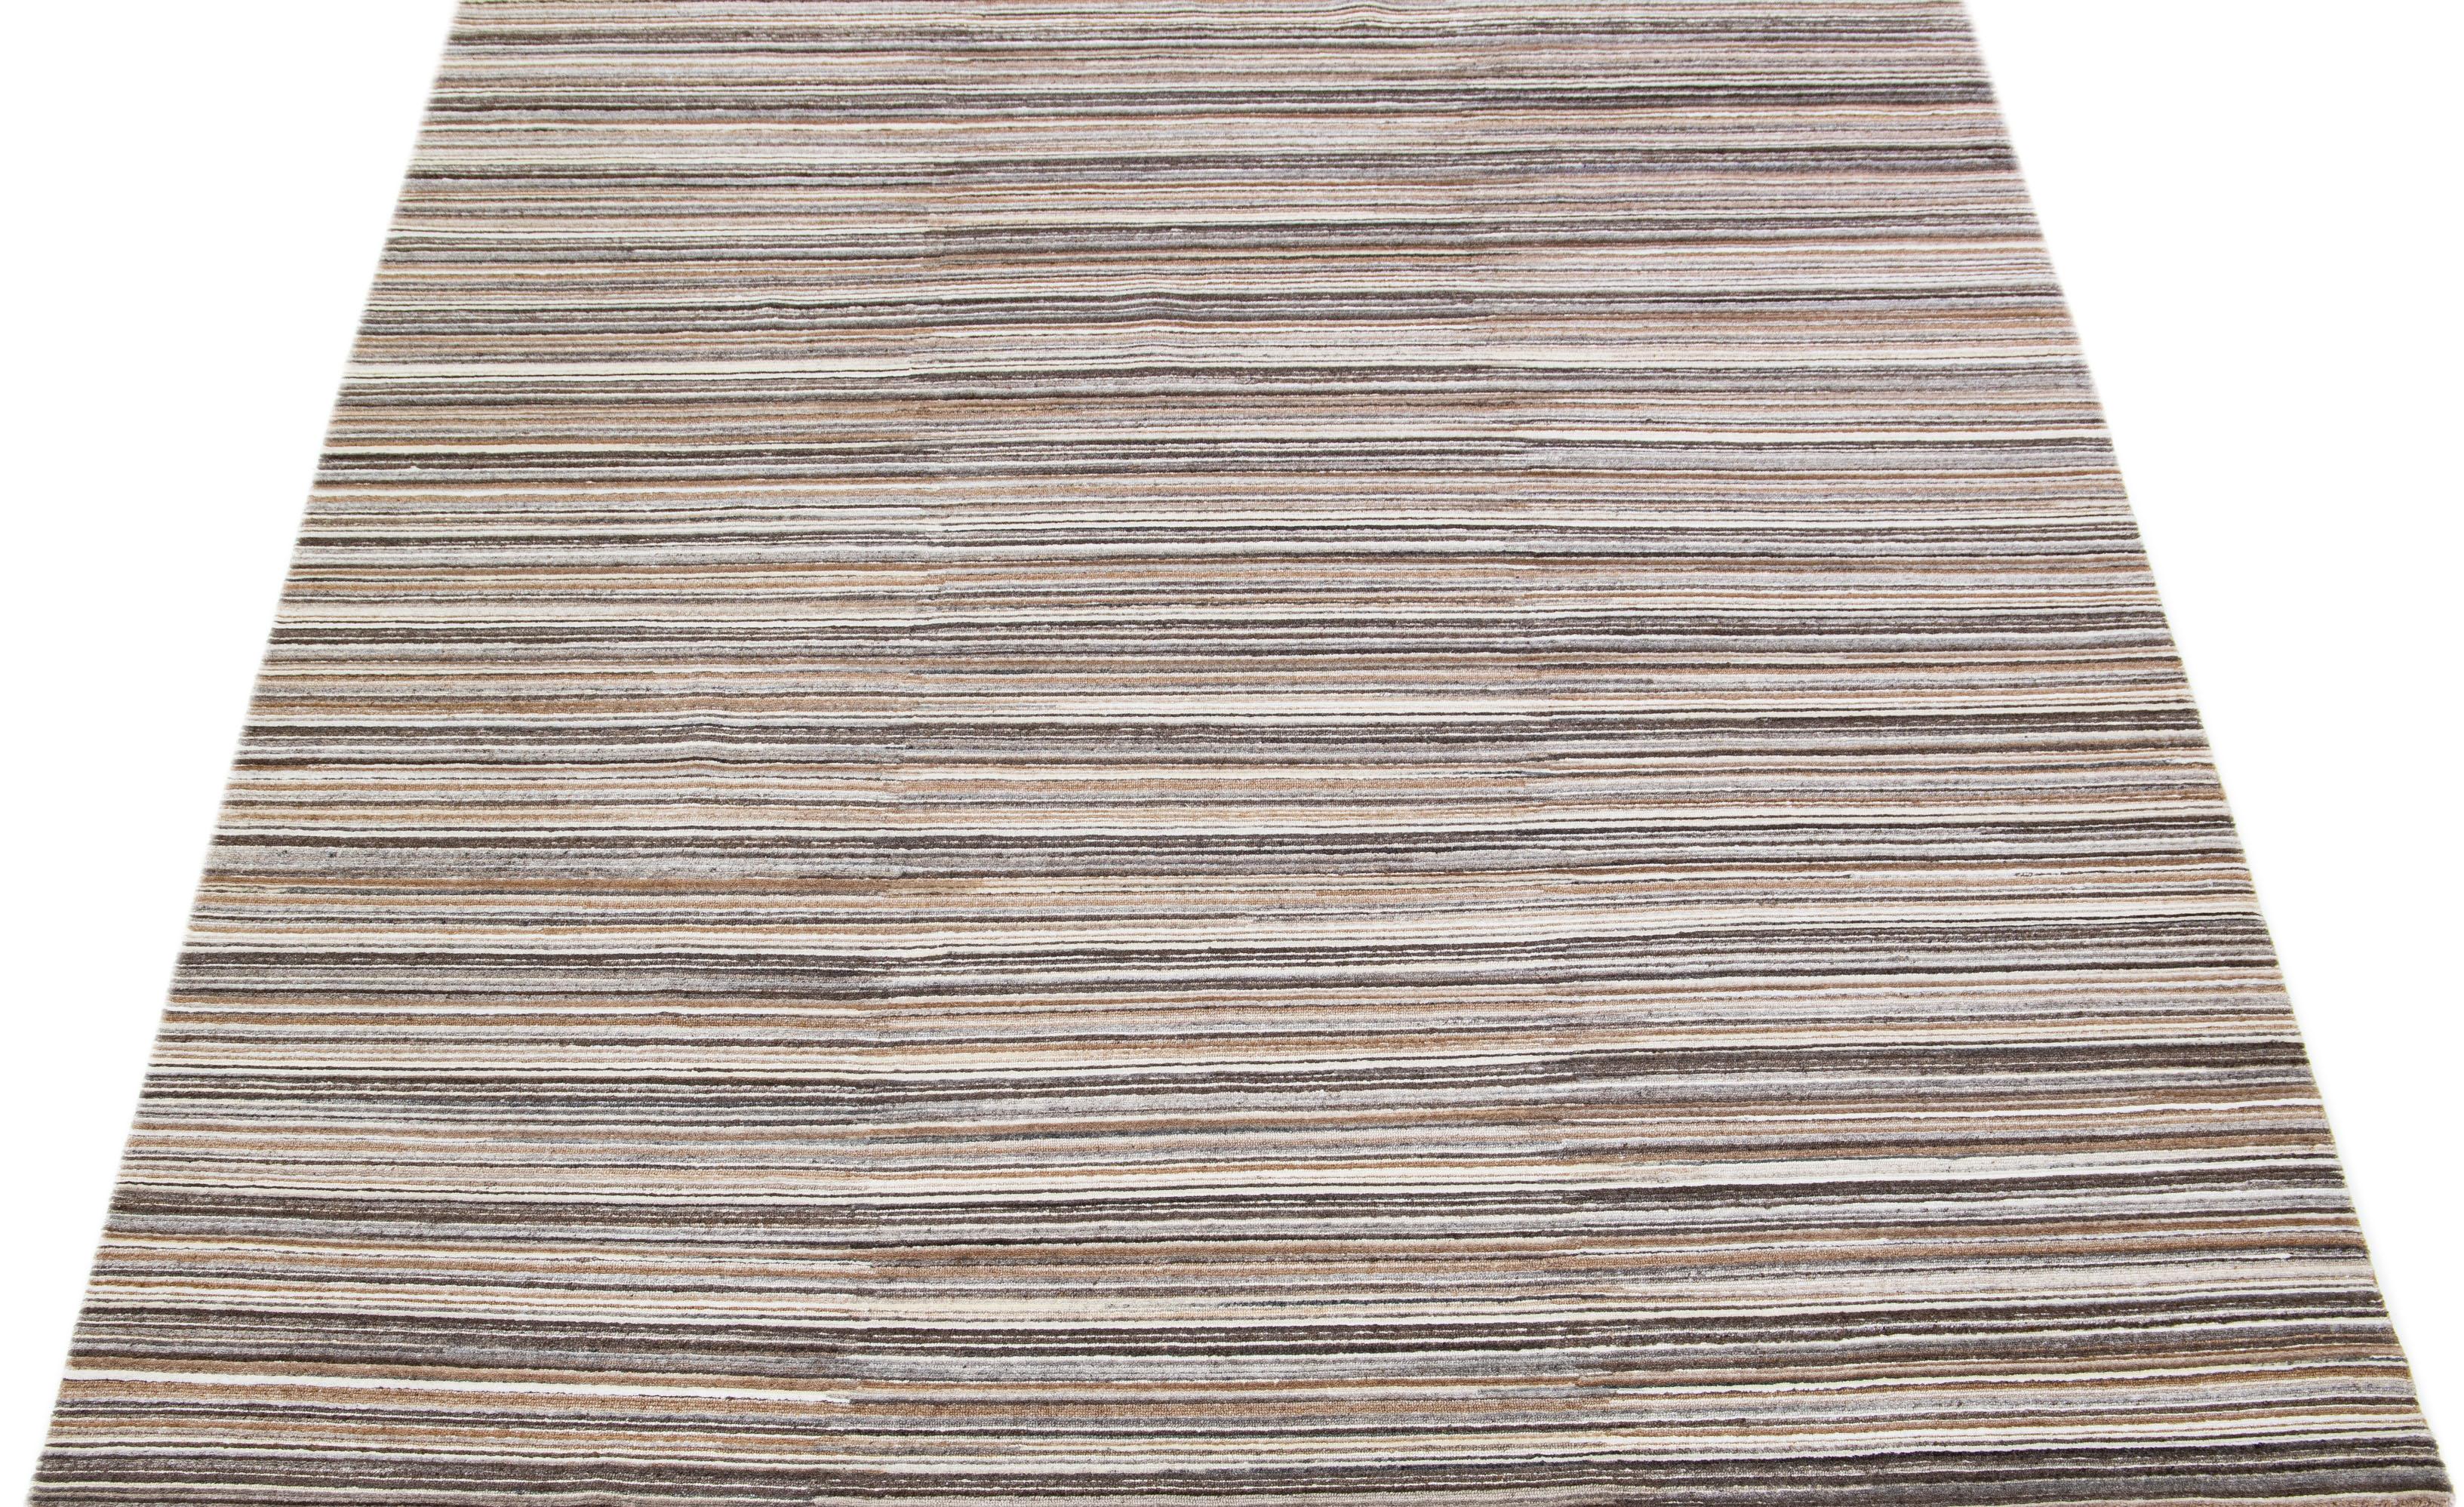 Schöne Apadana's handgefertigte Bambus & Seide indischen Rillen Teppich mit beige, grau und braun Farben Feld. Dieser Teppich aus der Groove Collection hat ein durchgehendes Streifendesign.

Dieser Teppich misst 8' x 10'.

Kundenspezifische Farben